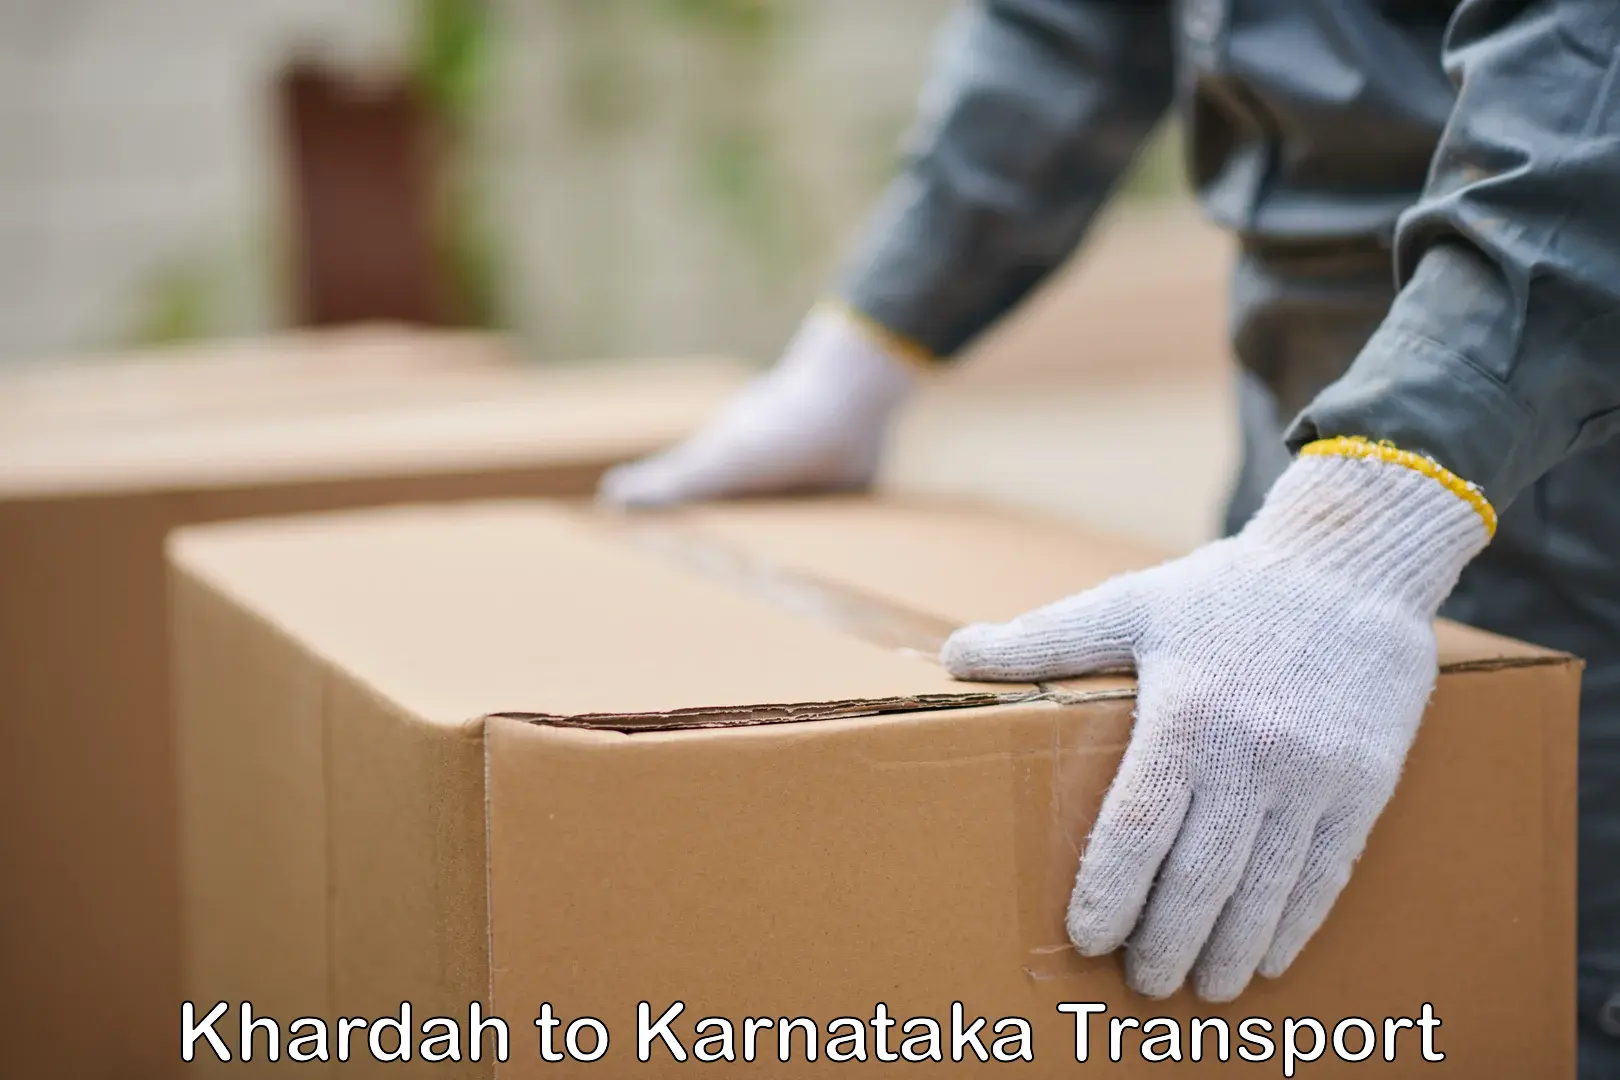 Daily transport service Khardah to Chamarajanagar